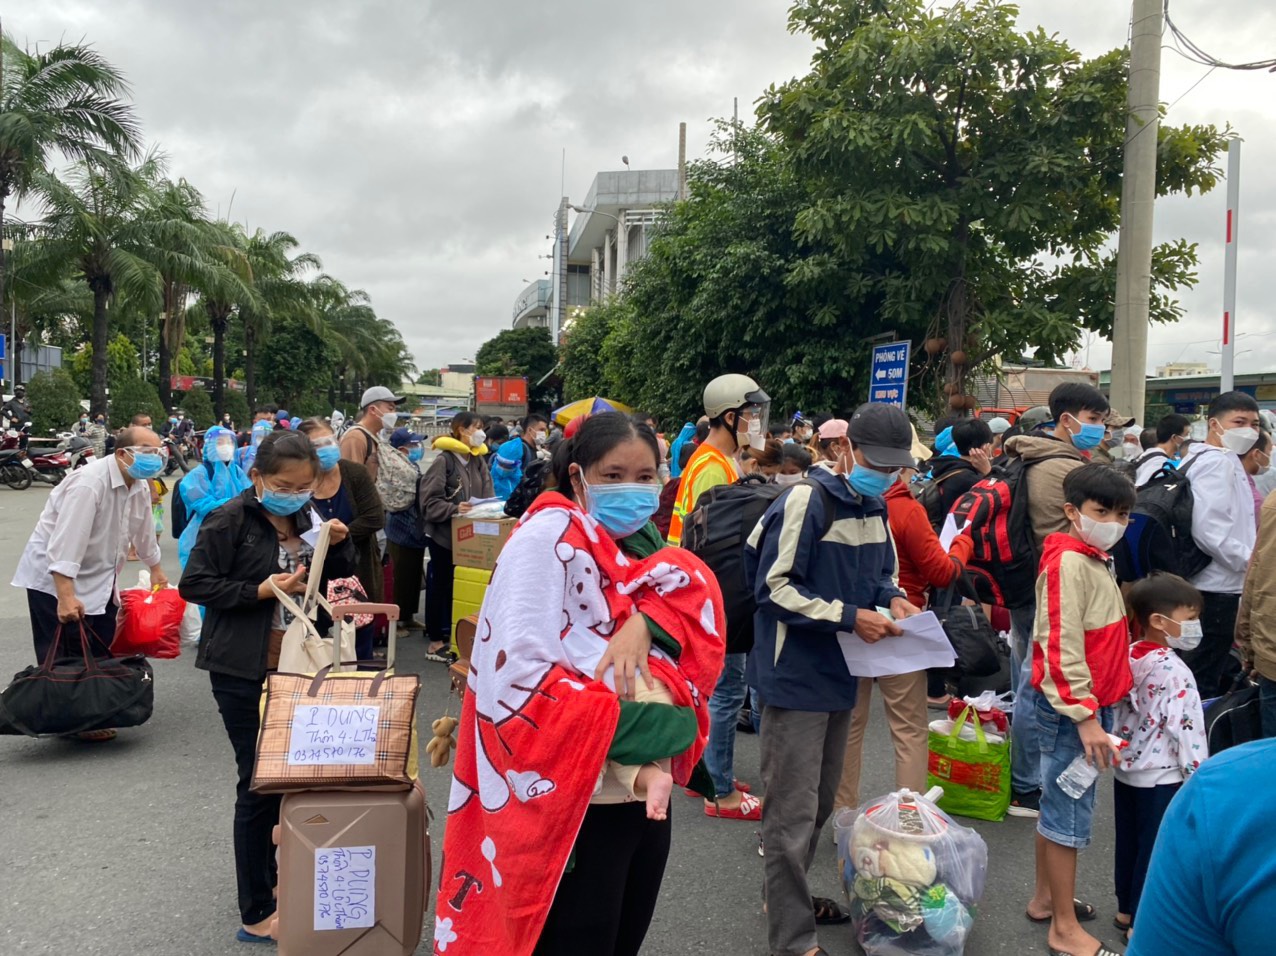 Lâm Đồng: Hỗ trợ đón hàng ngàn công dân về địa phương từ vùng dịch - Ảnh 2.